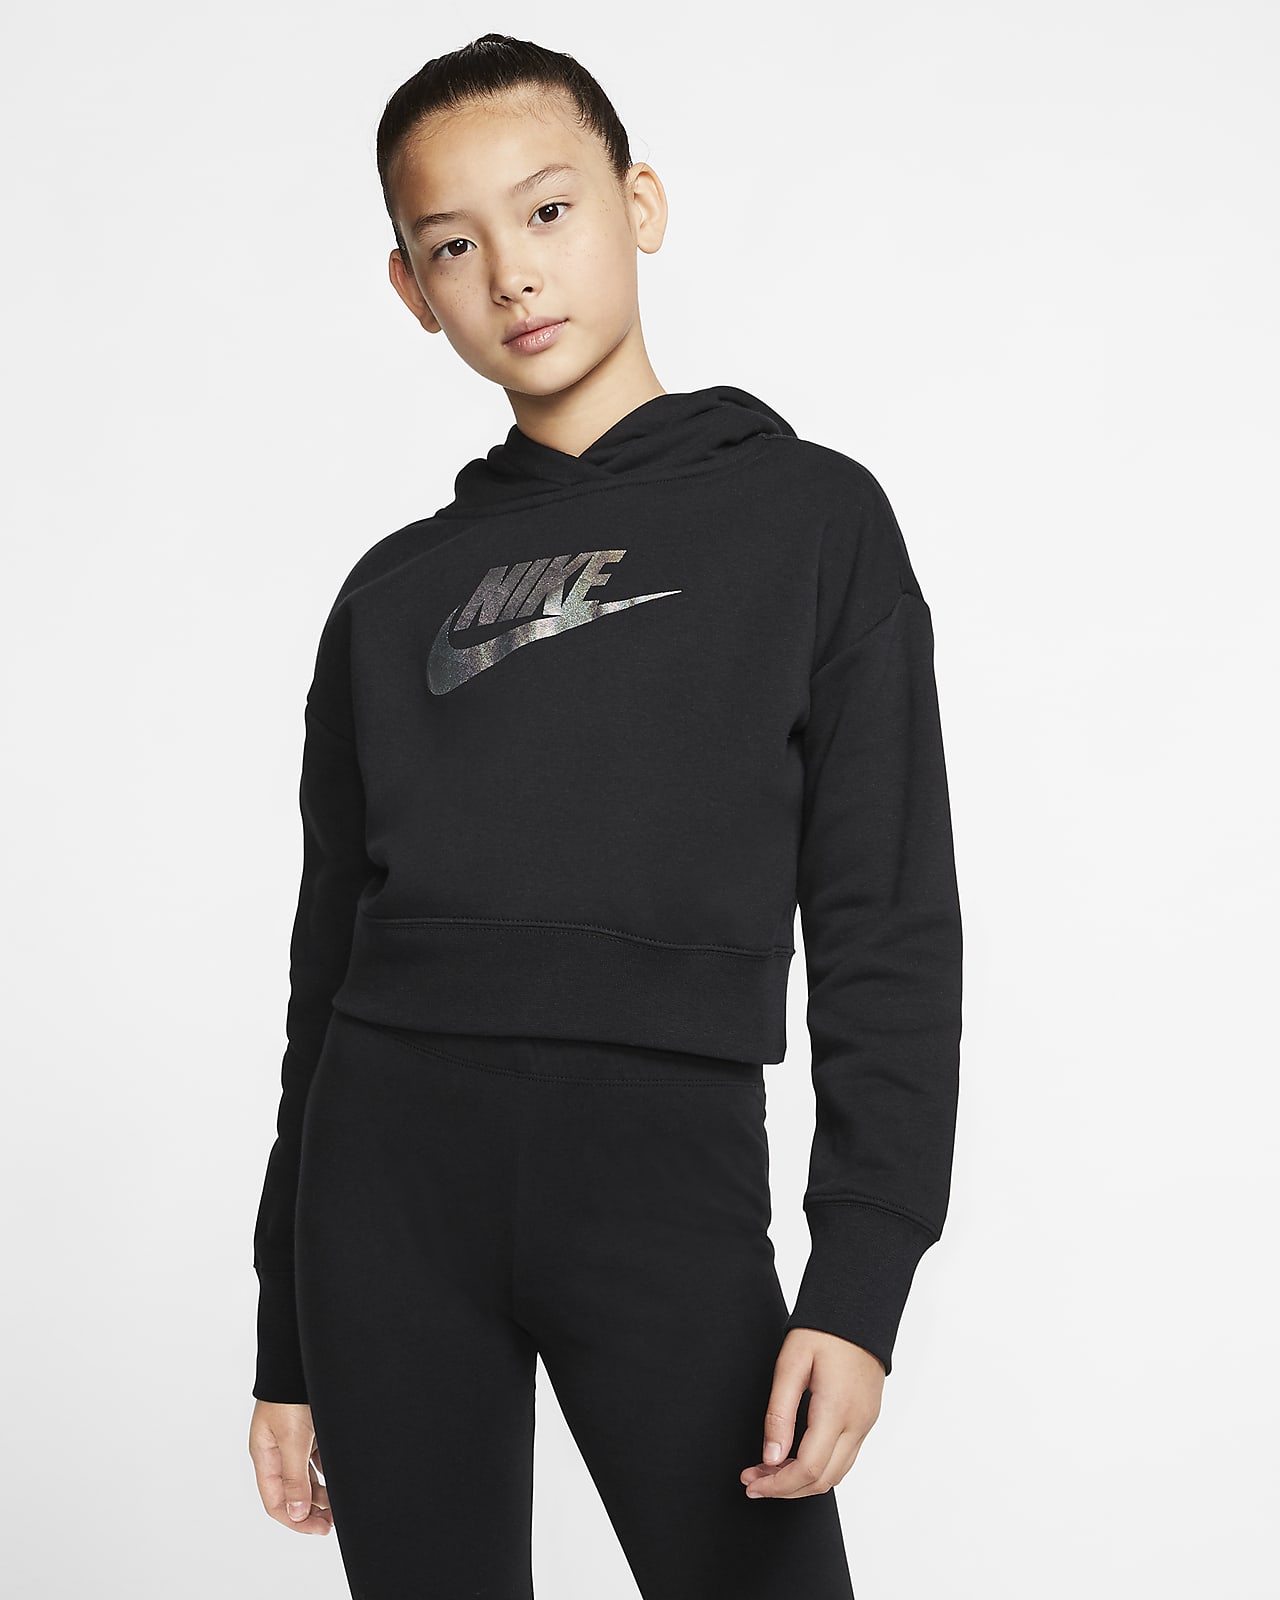 Sweat à capuche court Nike Sportswear pour Fille plus âgée